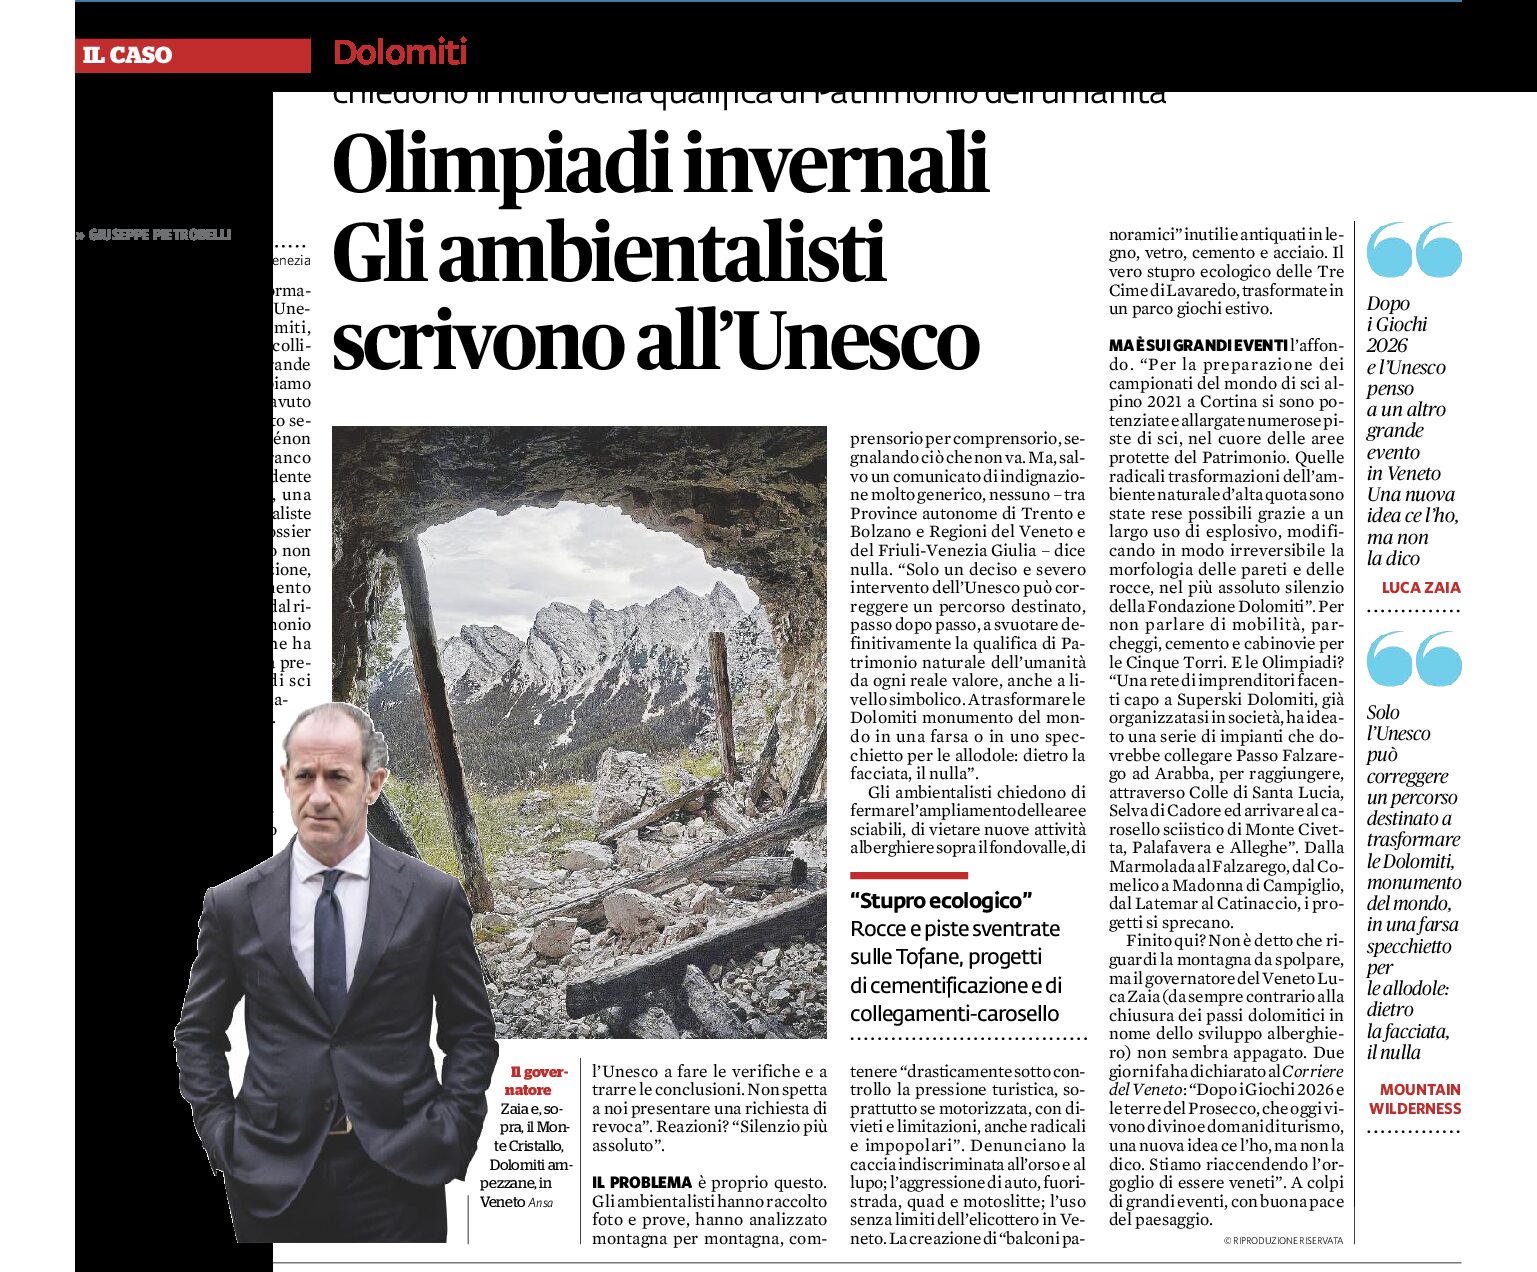 Dolomiti, Olimpiadi: gli ambientalisti scrivono all’Unesco e chiedono il ritiro della qualifica di Patrimonio dell’umanità